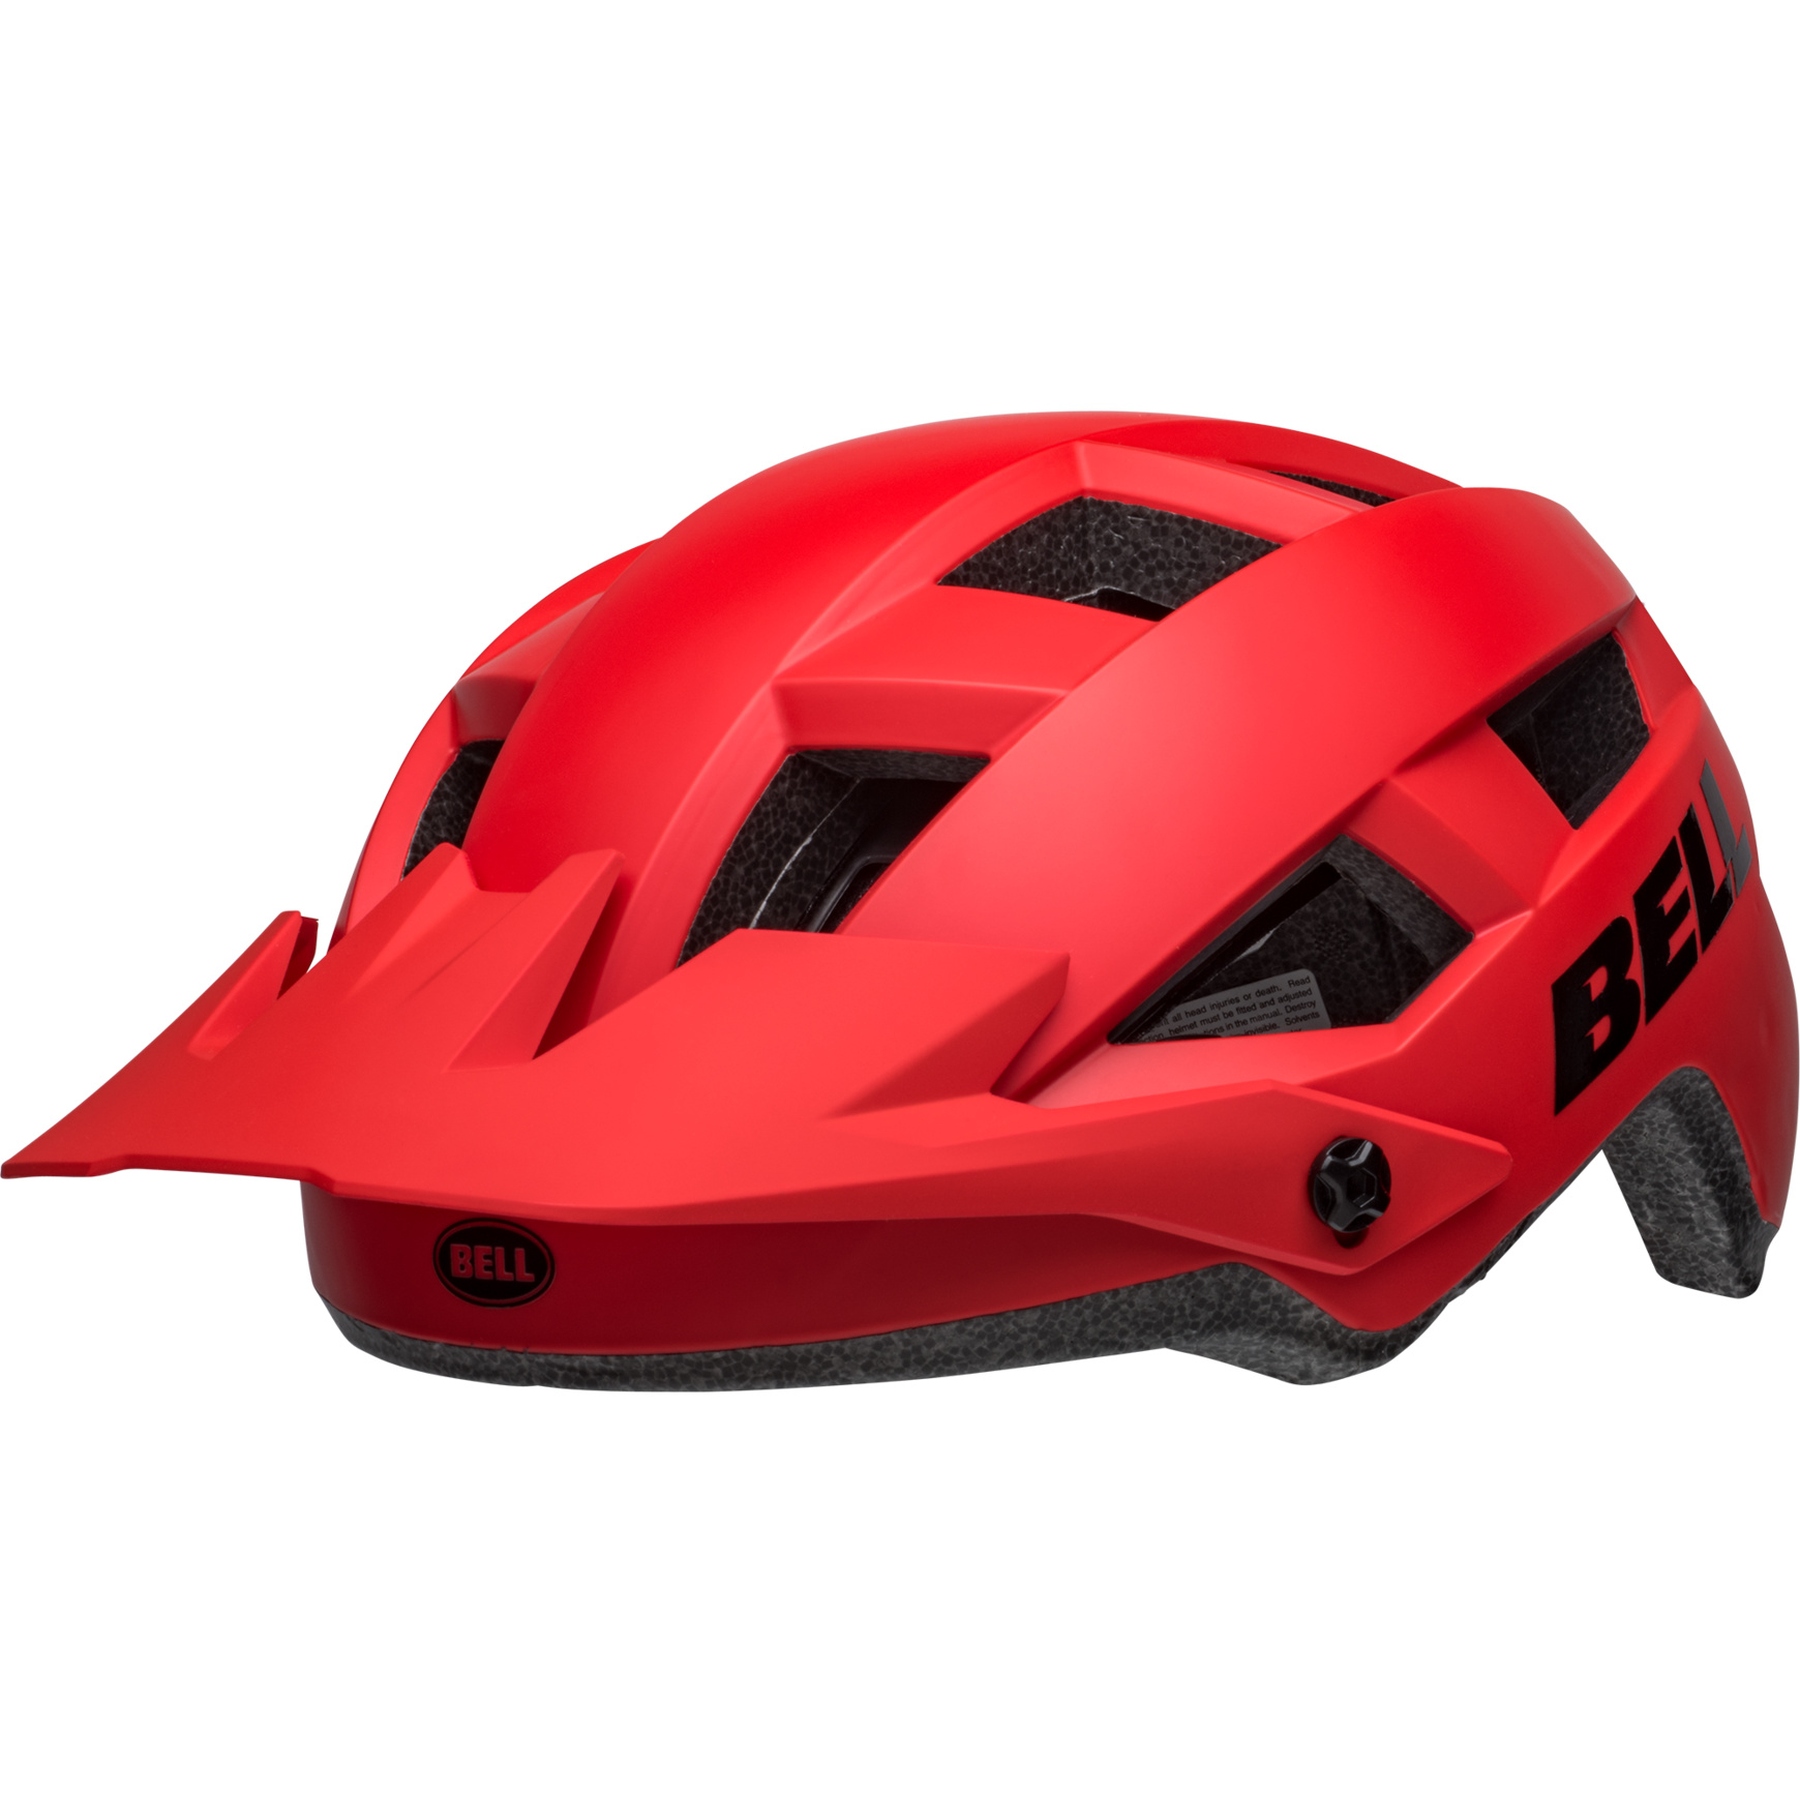 Produktbild von Bell Spark 2 Helm - matte red